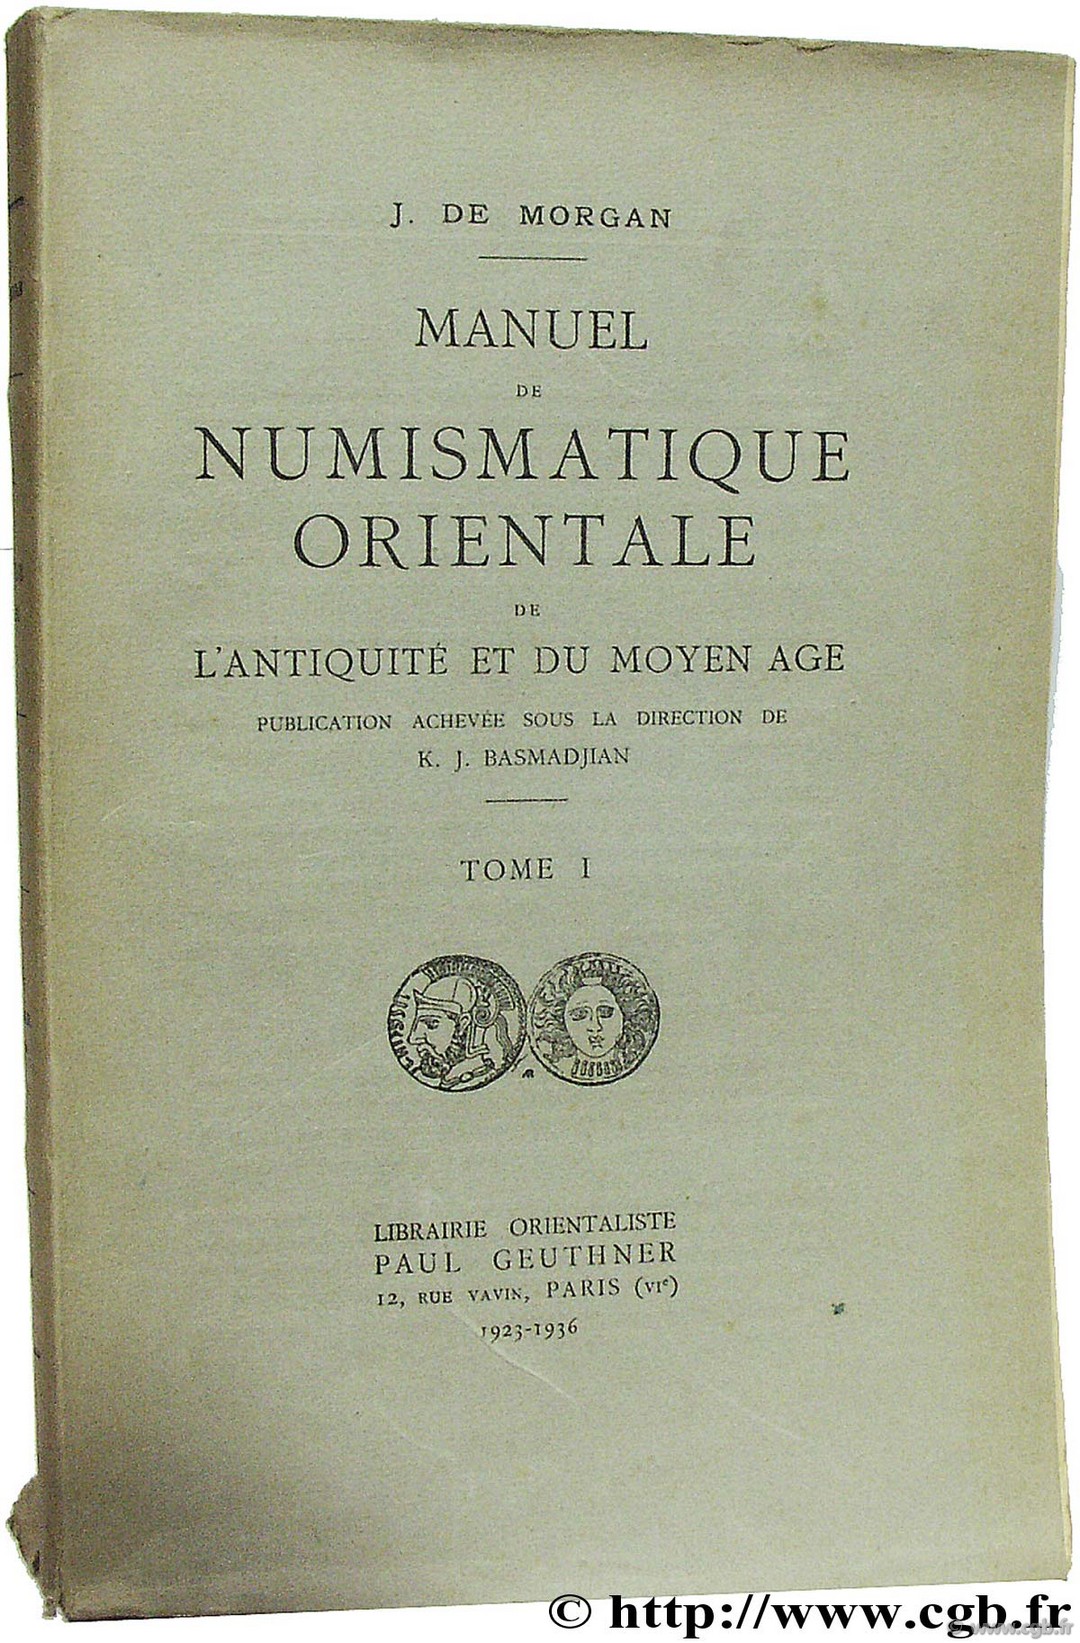 Manuel de numismatique orientale de l Antiquité et du Moyen-Âge MORGAN J. de